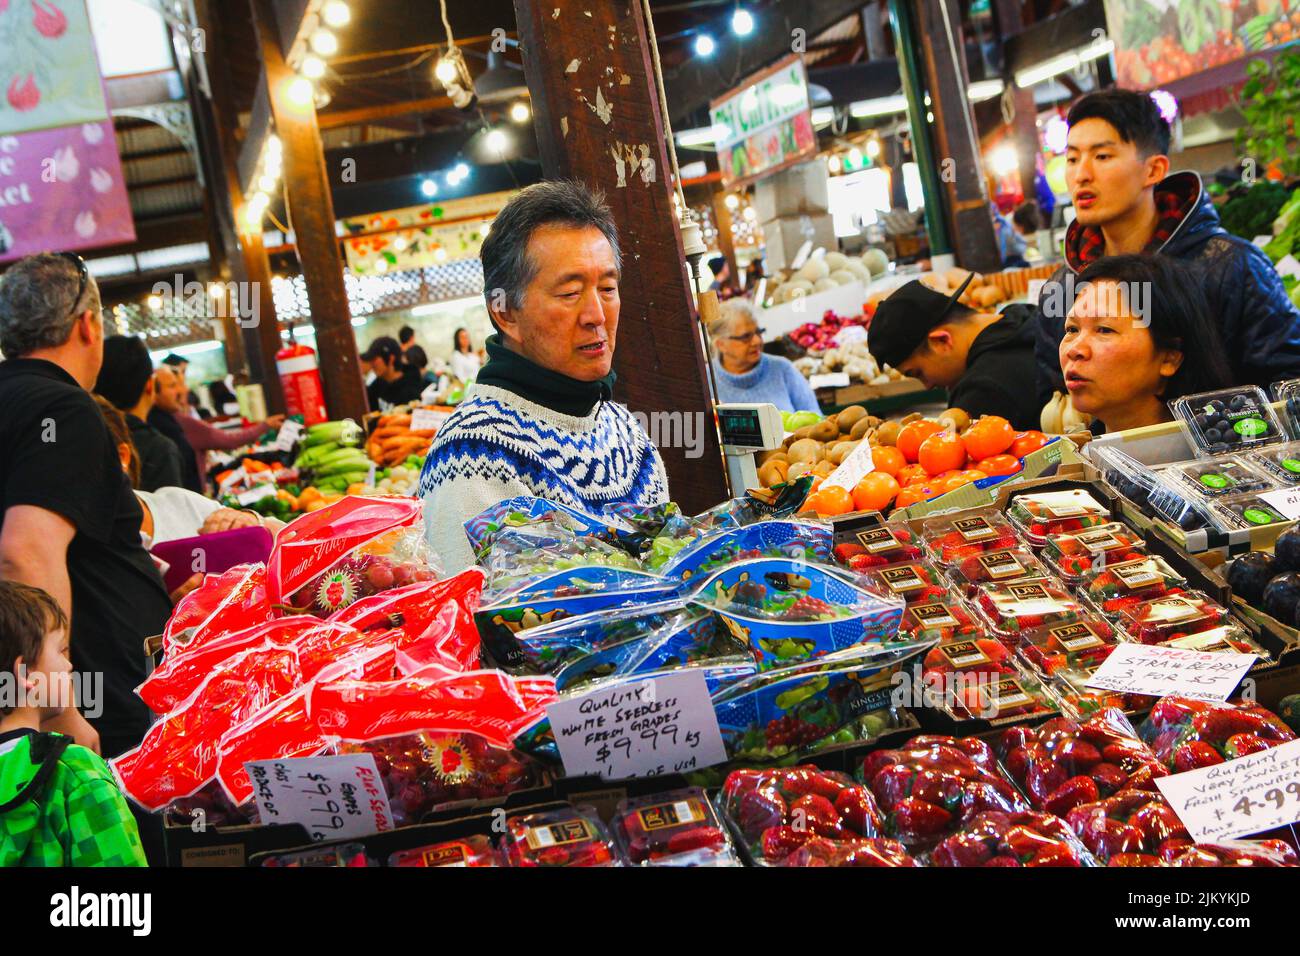 Vendeur asiatique vendant des fruits sur les marchés Banque D'Images